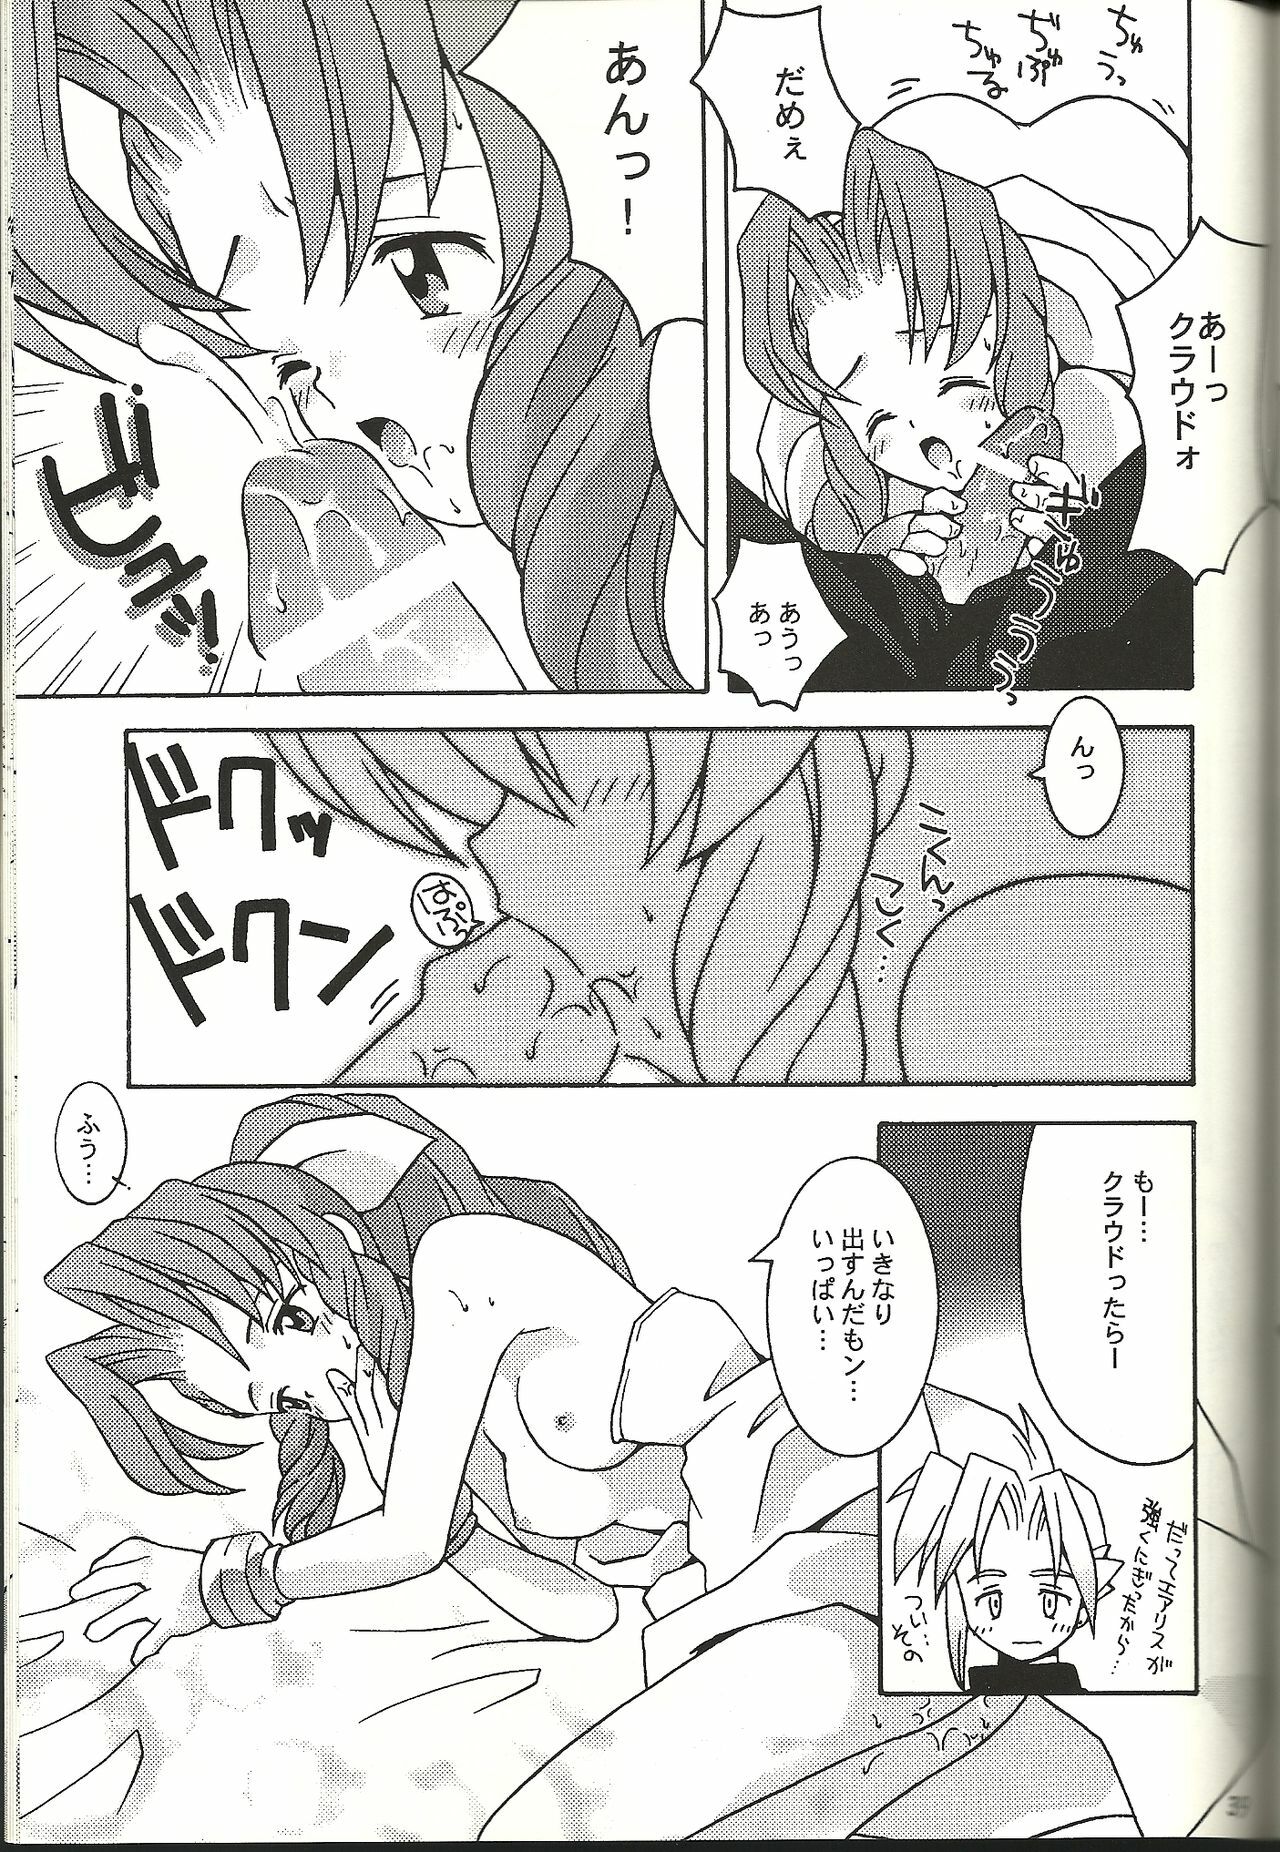 (CR21) [Bakuhatsu BRS. (B.Tarou)] Renai Shiyou (Final Fantasy VII) page 39 full